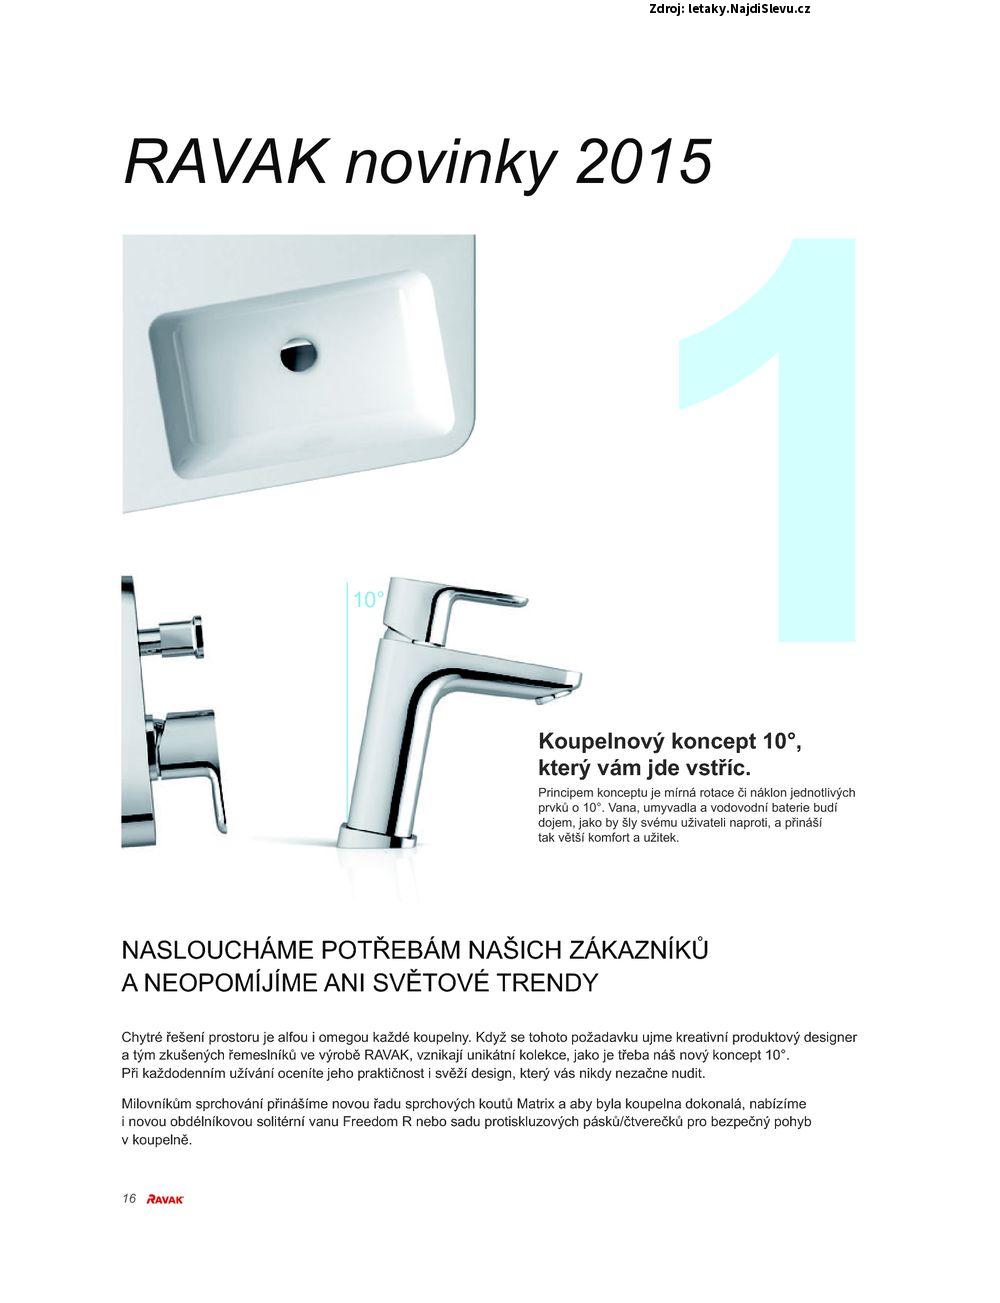 Strana 16 - letk RAVAK (do 31. 12. 2015)